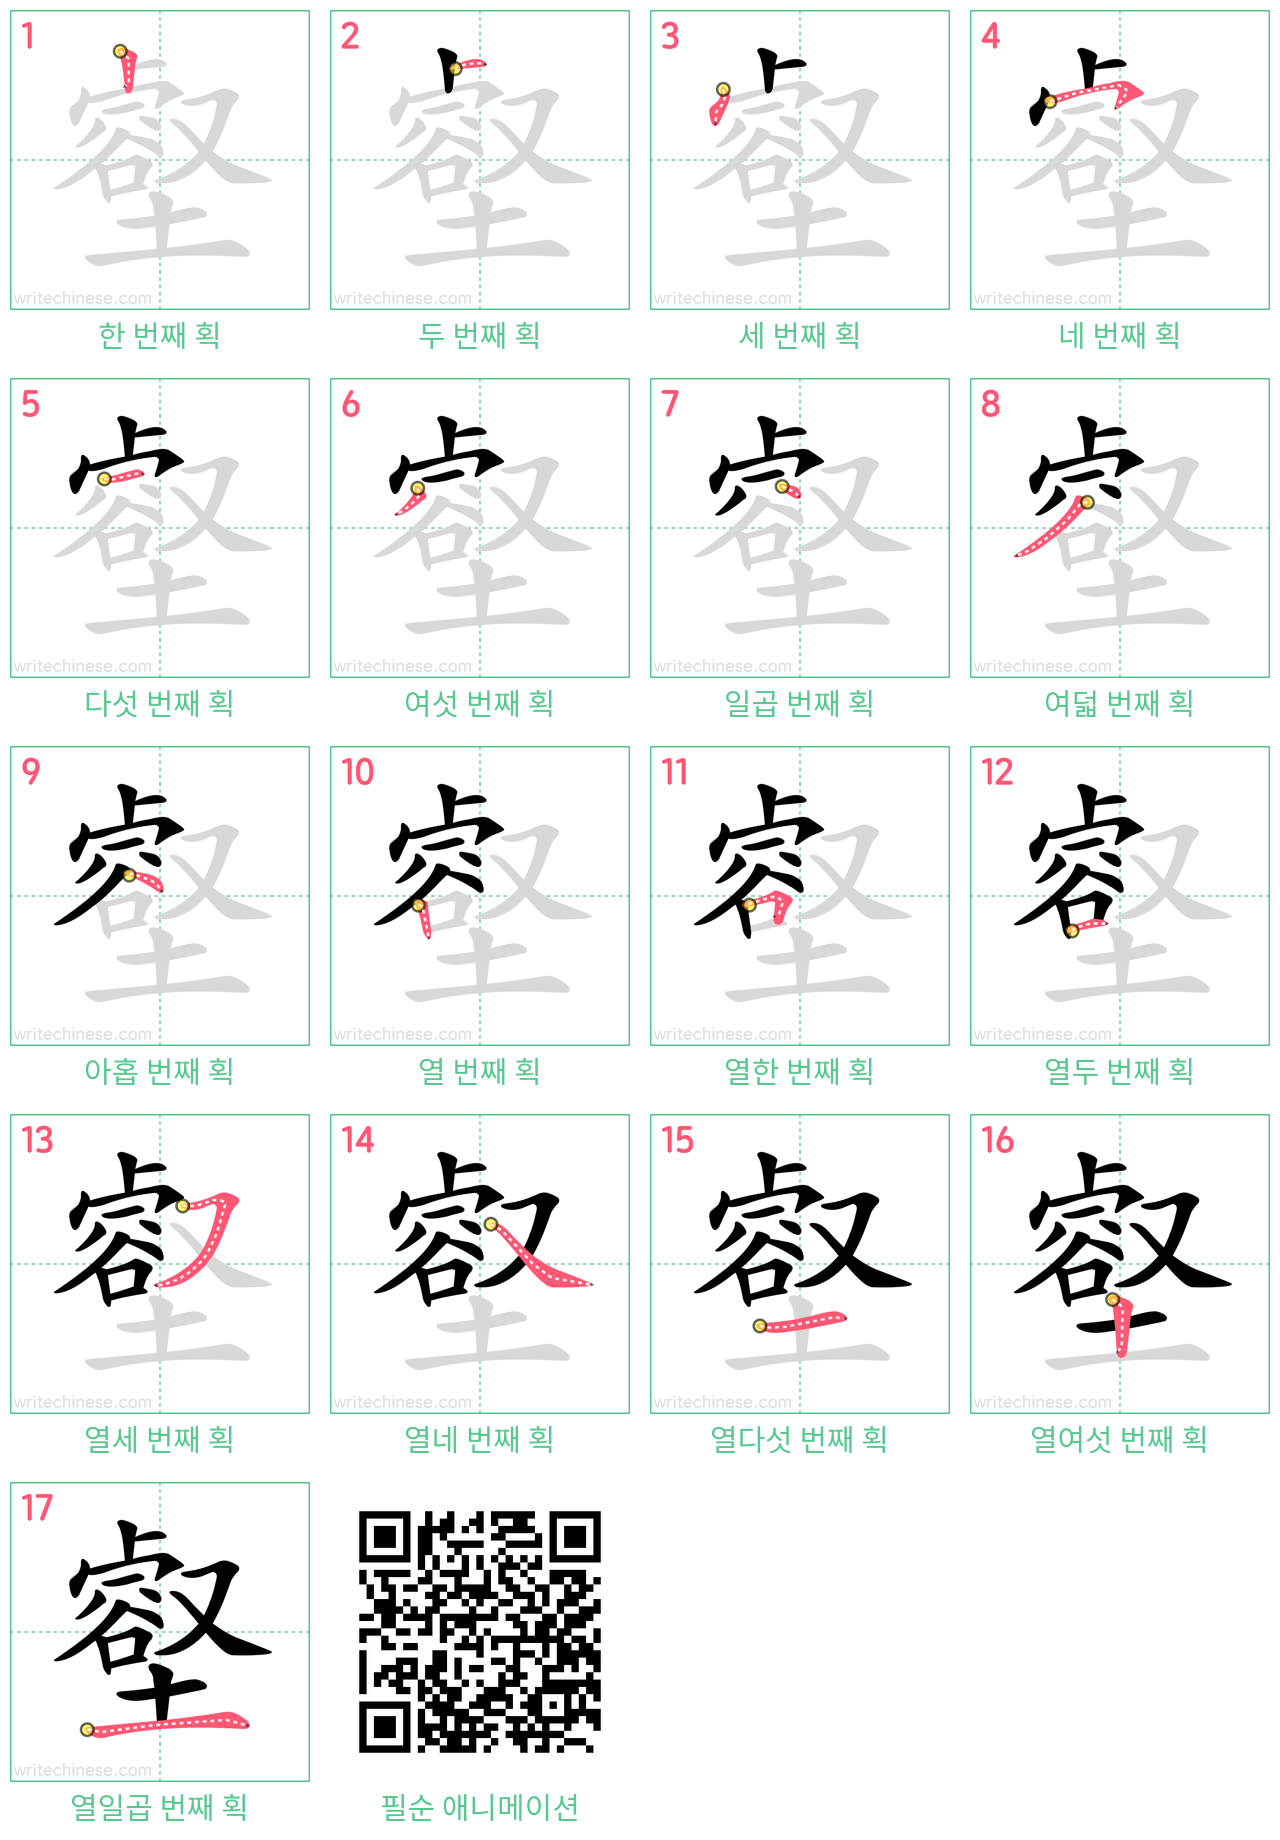 壑 step-by-step stroke order diagrams